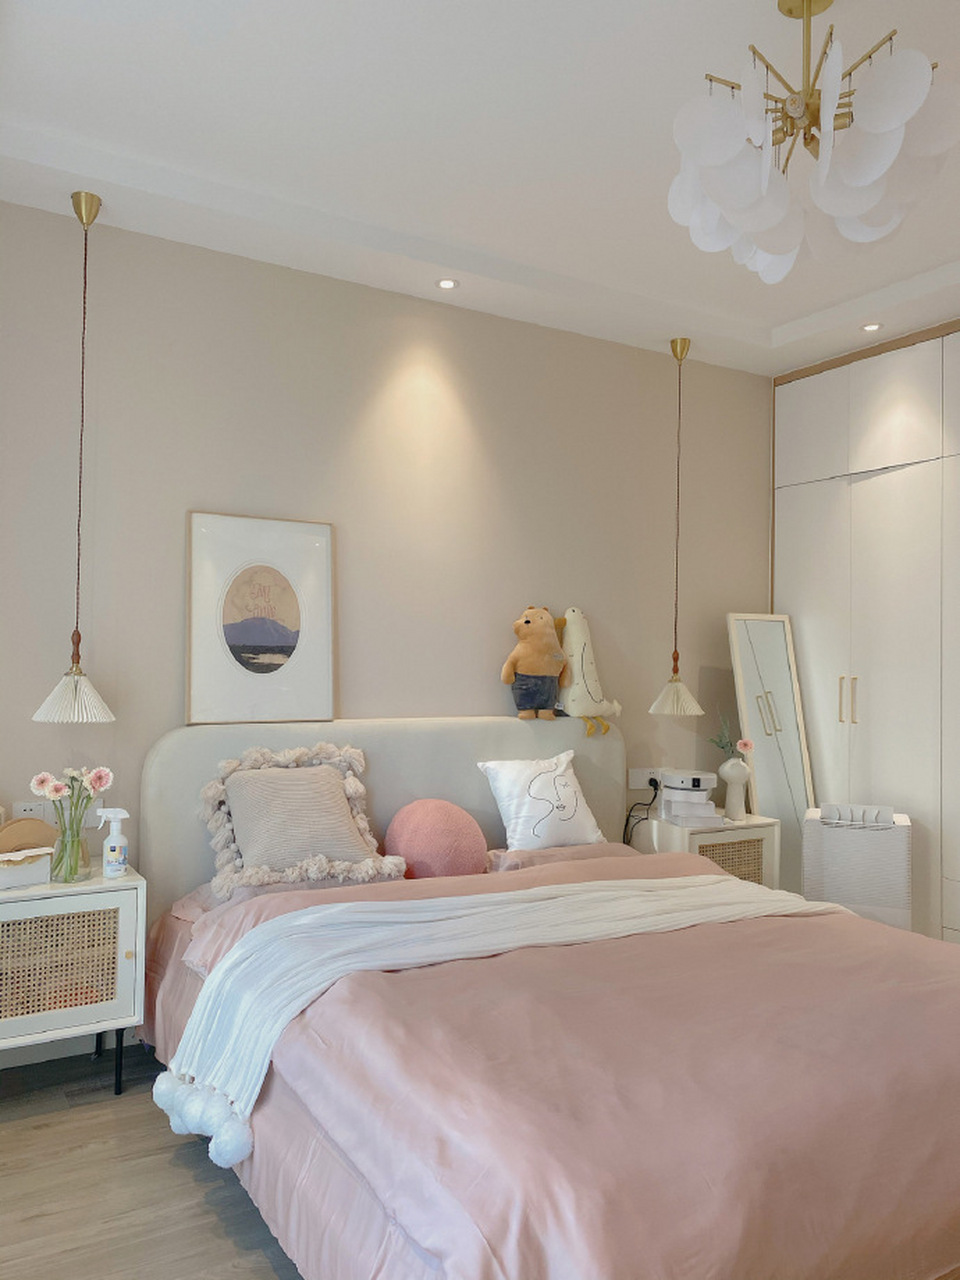 奶咖色墙漆效果很不错,打造温馨舒适的卧室        